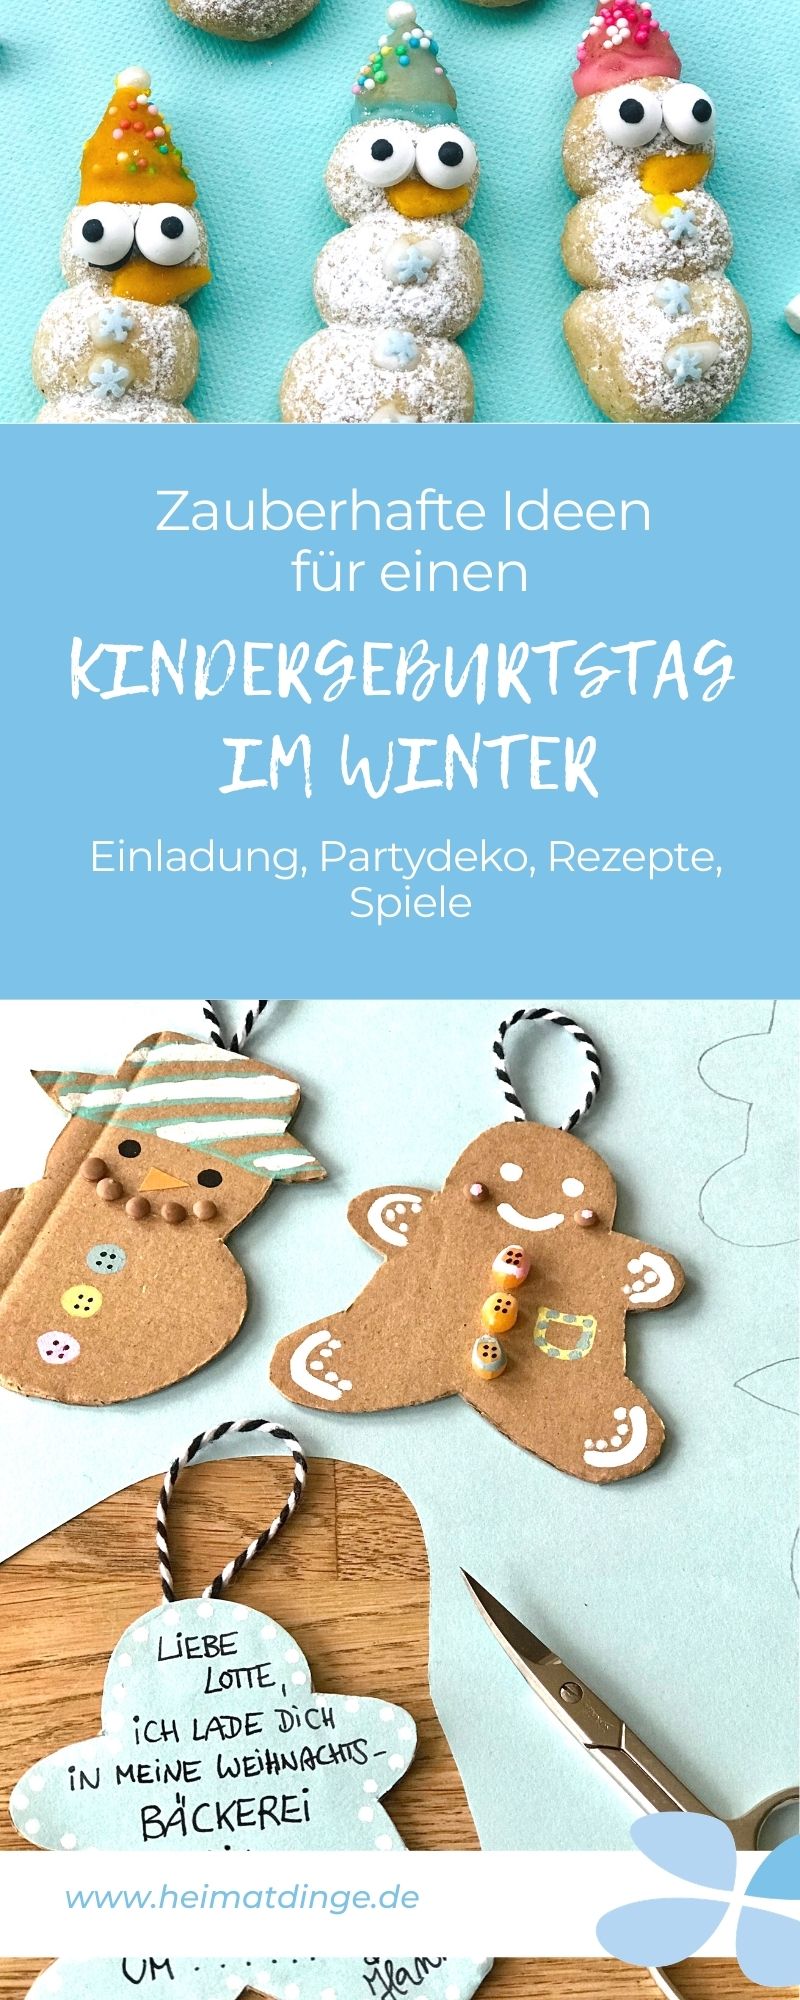 kindergeburtstag-winter-ideen-einladung-spiele-essen-pin-1 - Heimatdinge